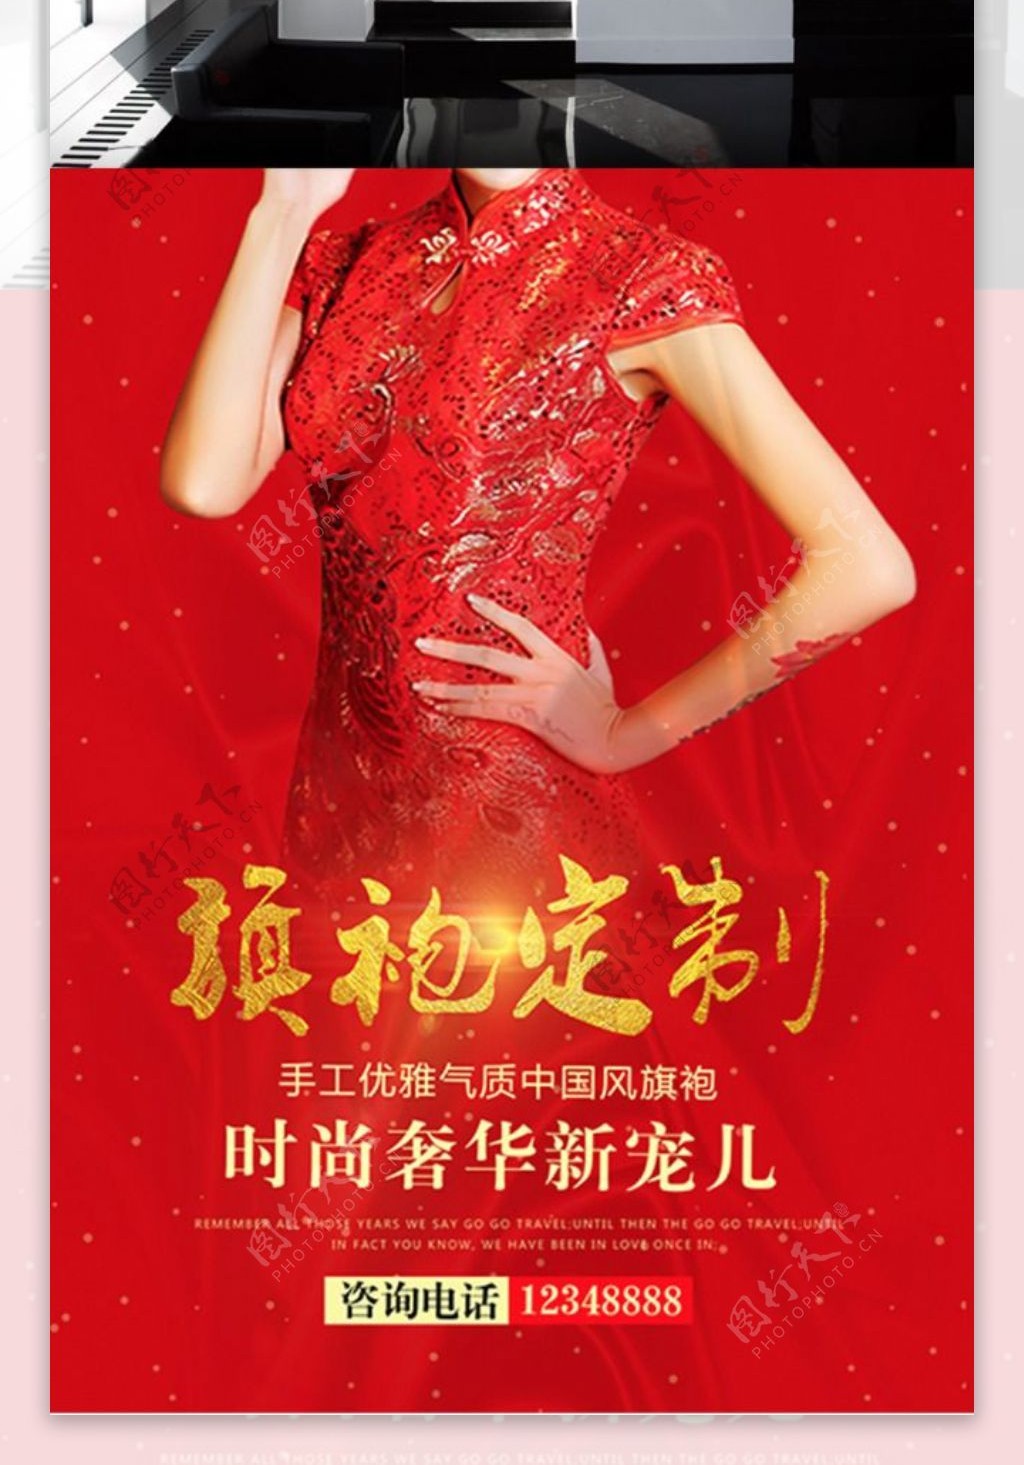 东方手工红色中国风旗袍定制时尚奢华海报